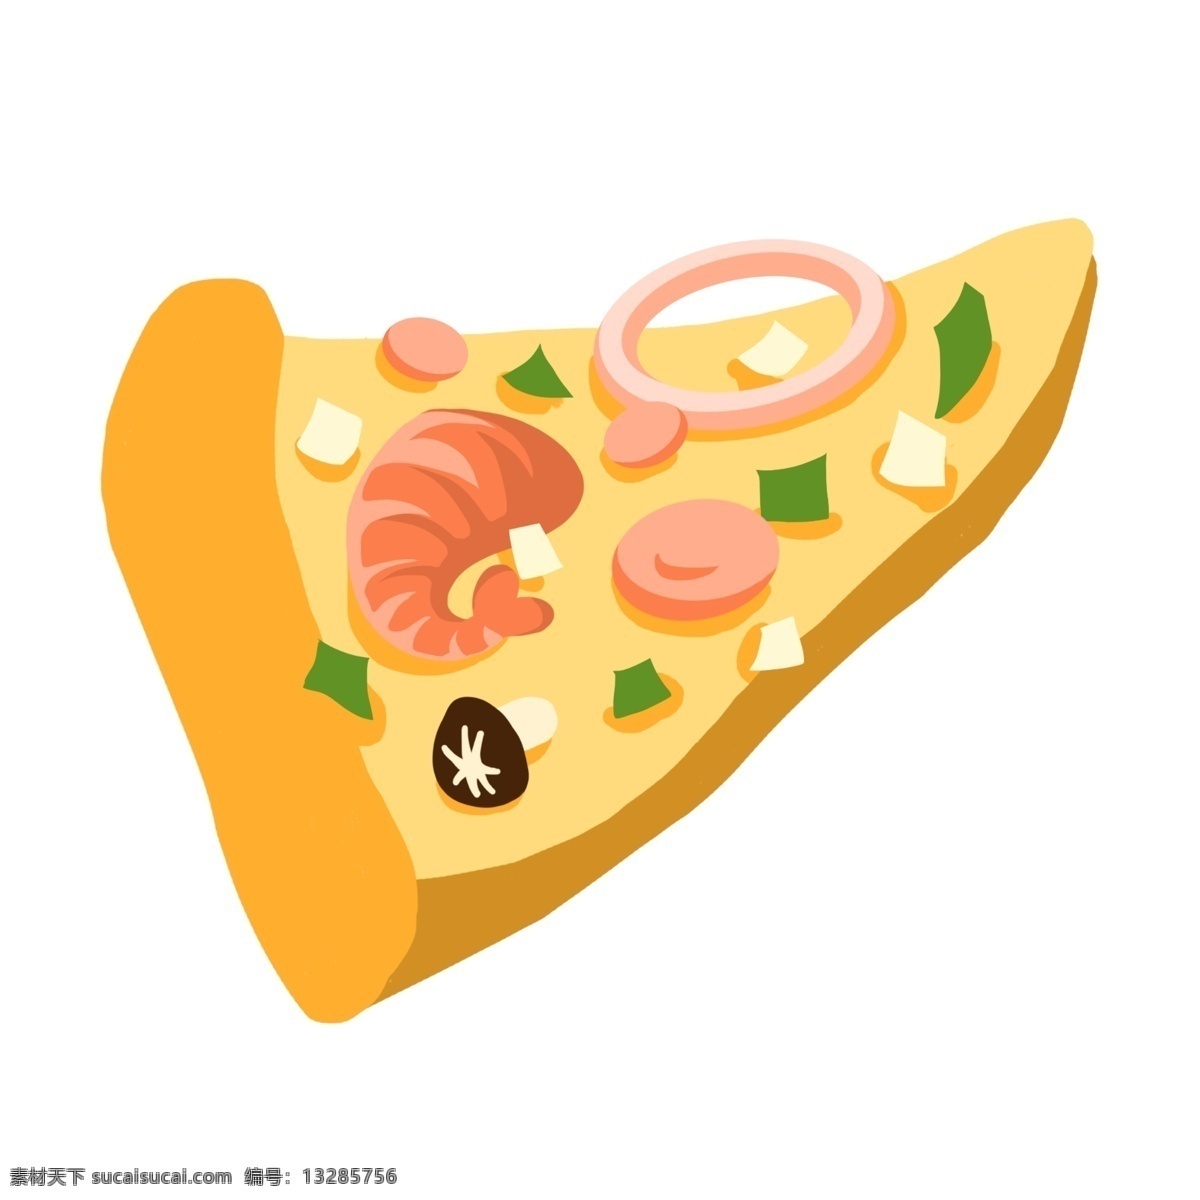 海鲜 图案 披萨 快餐 美食